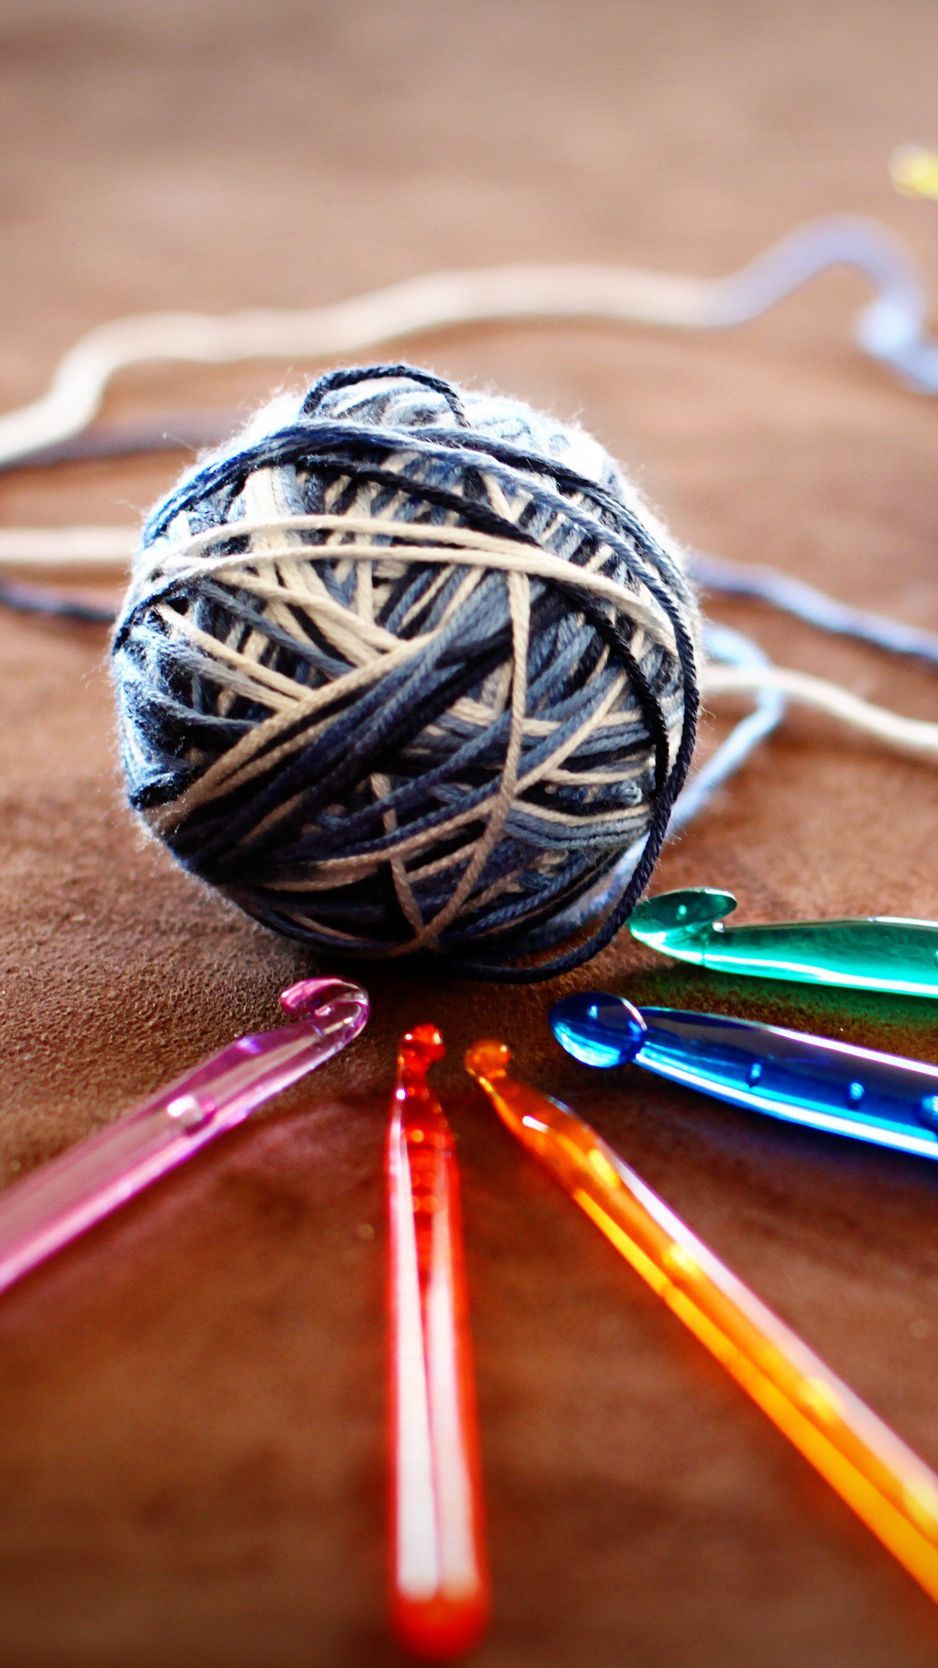 Download wallpaper 938x1668 knitting, hooks, threads, hobbies